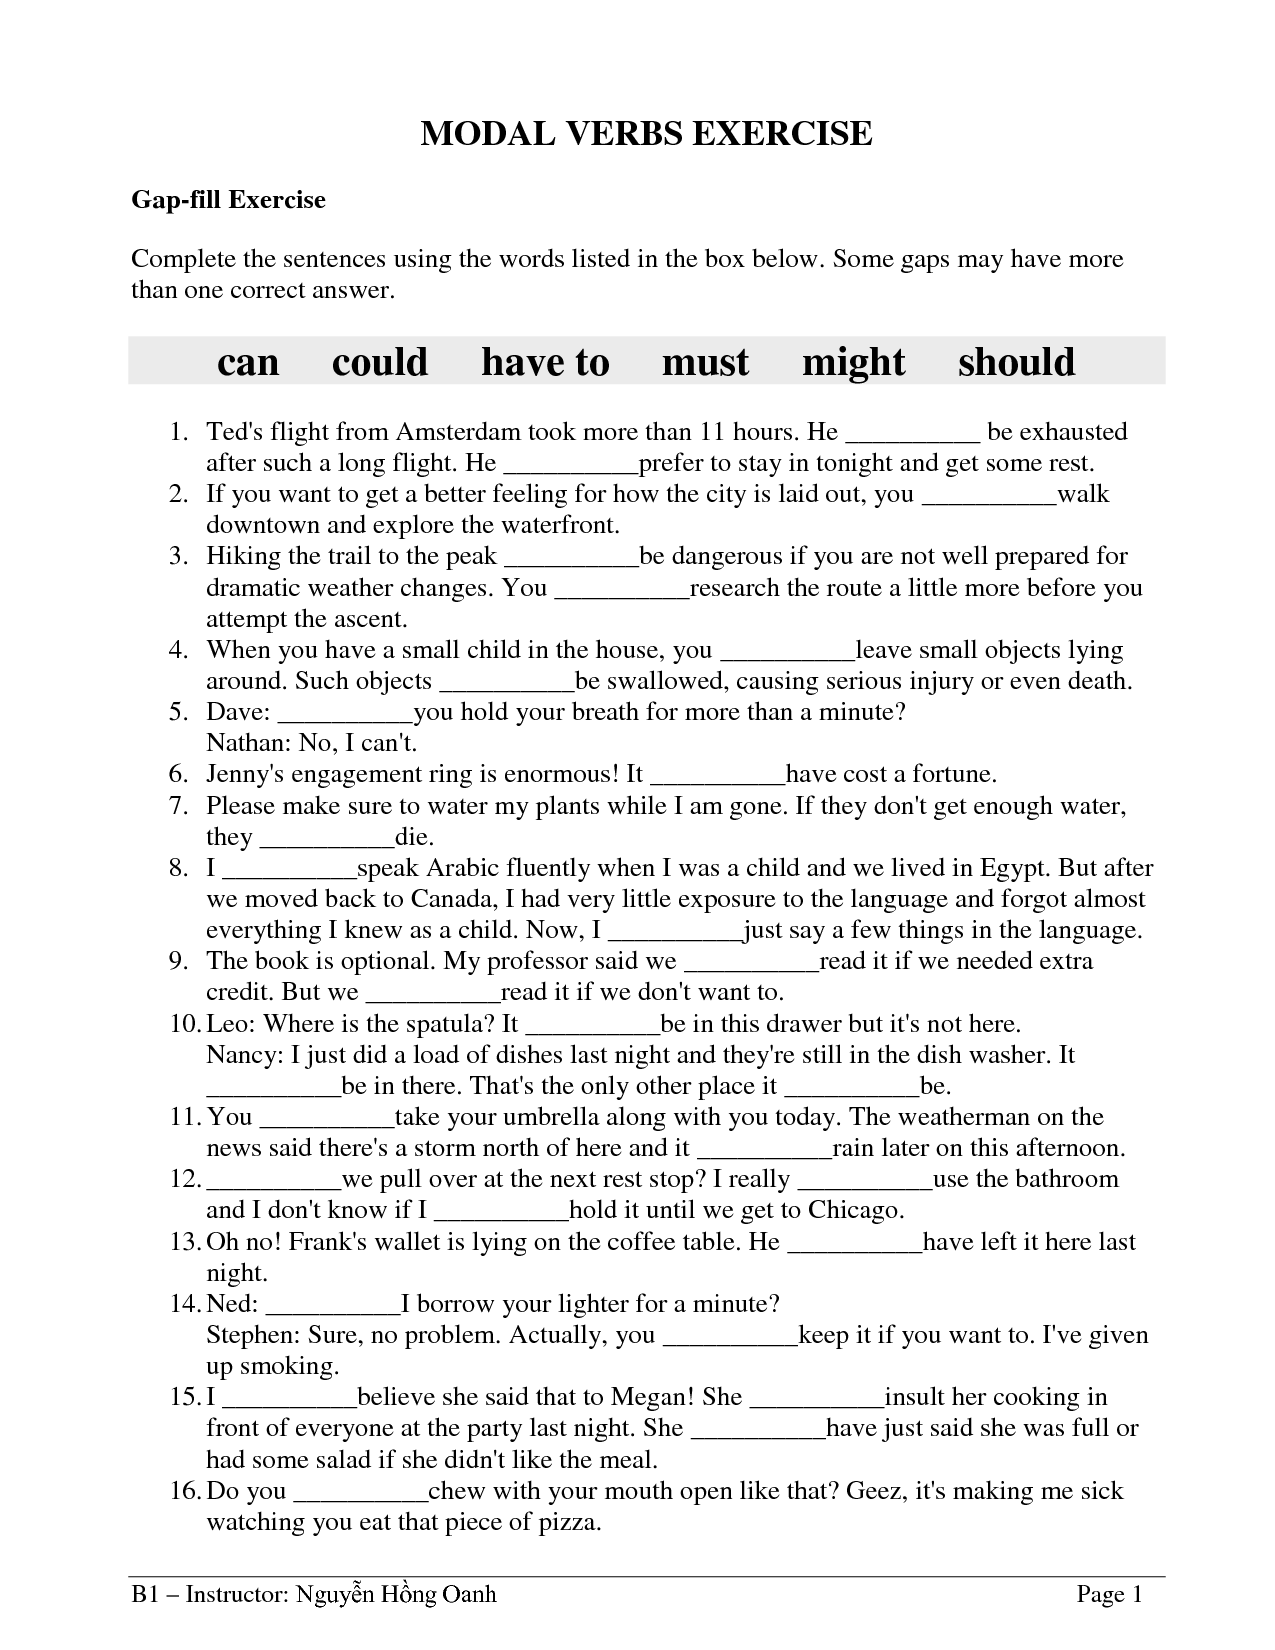 Modal Verbs Worksheets For Grade Worksheetpedia My XXX Hot Girl